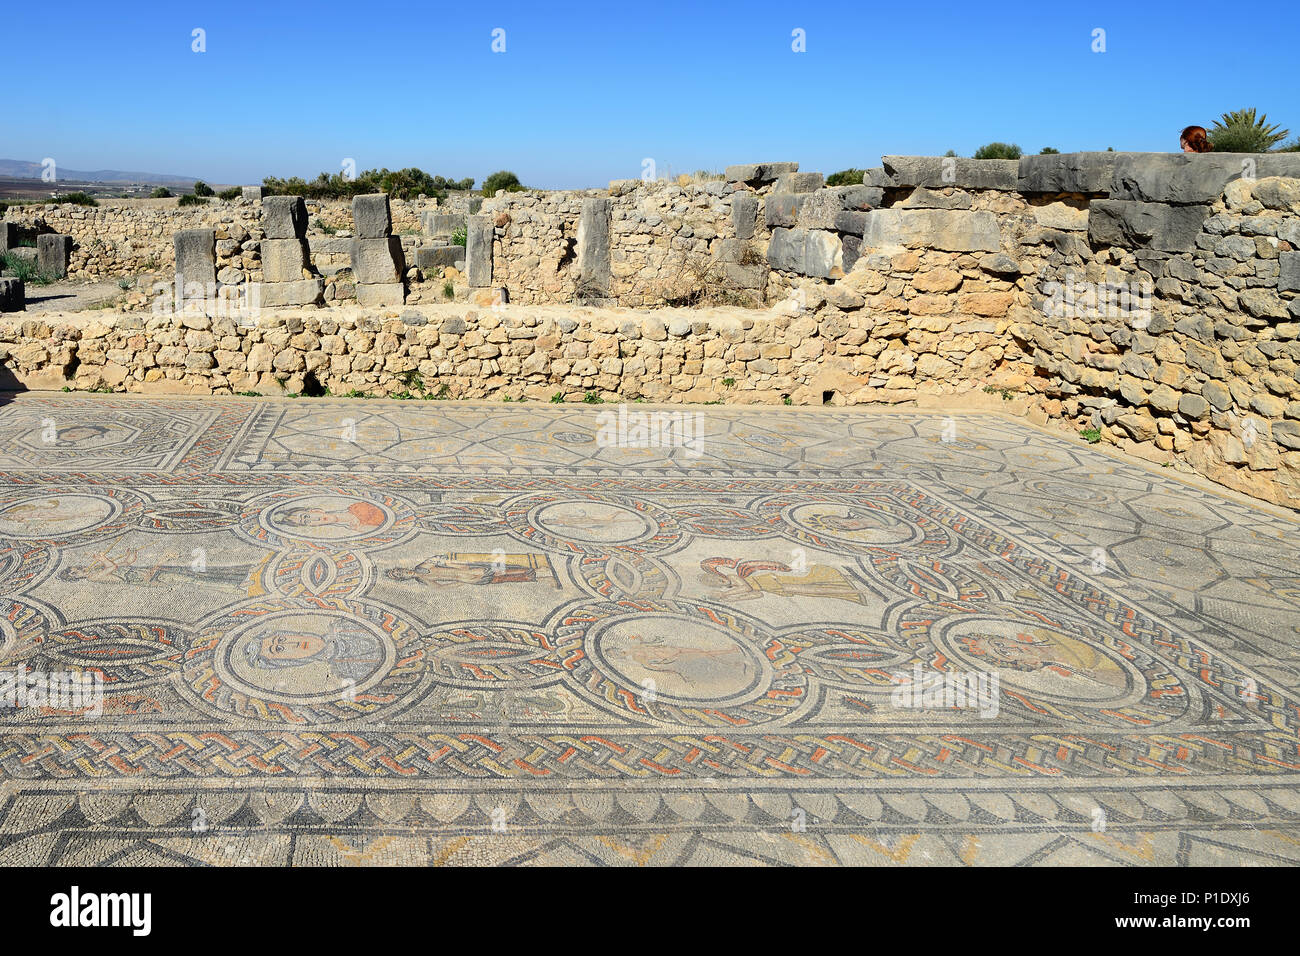 VOLUBILIS, Marocco - 29 novembre 2015: ampio complesso di rovine della città romana Volubilis - di antica città capitale della Mauritania nel centrale p Foto Stock